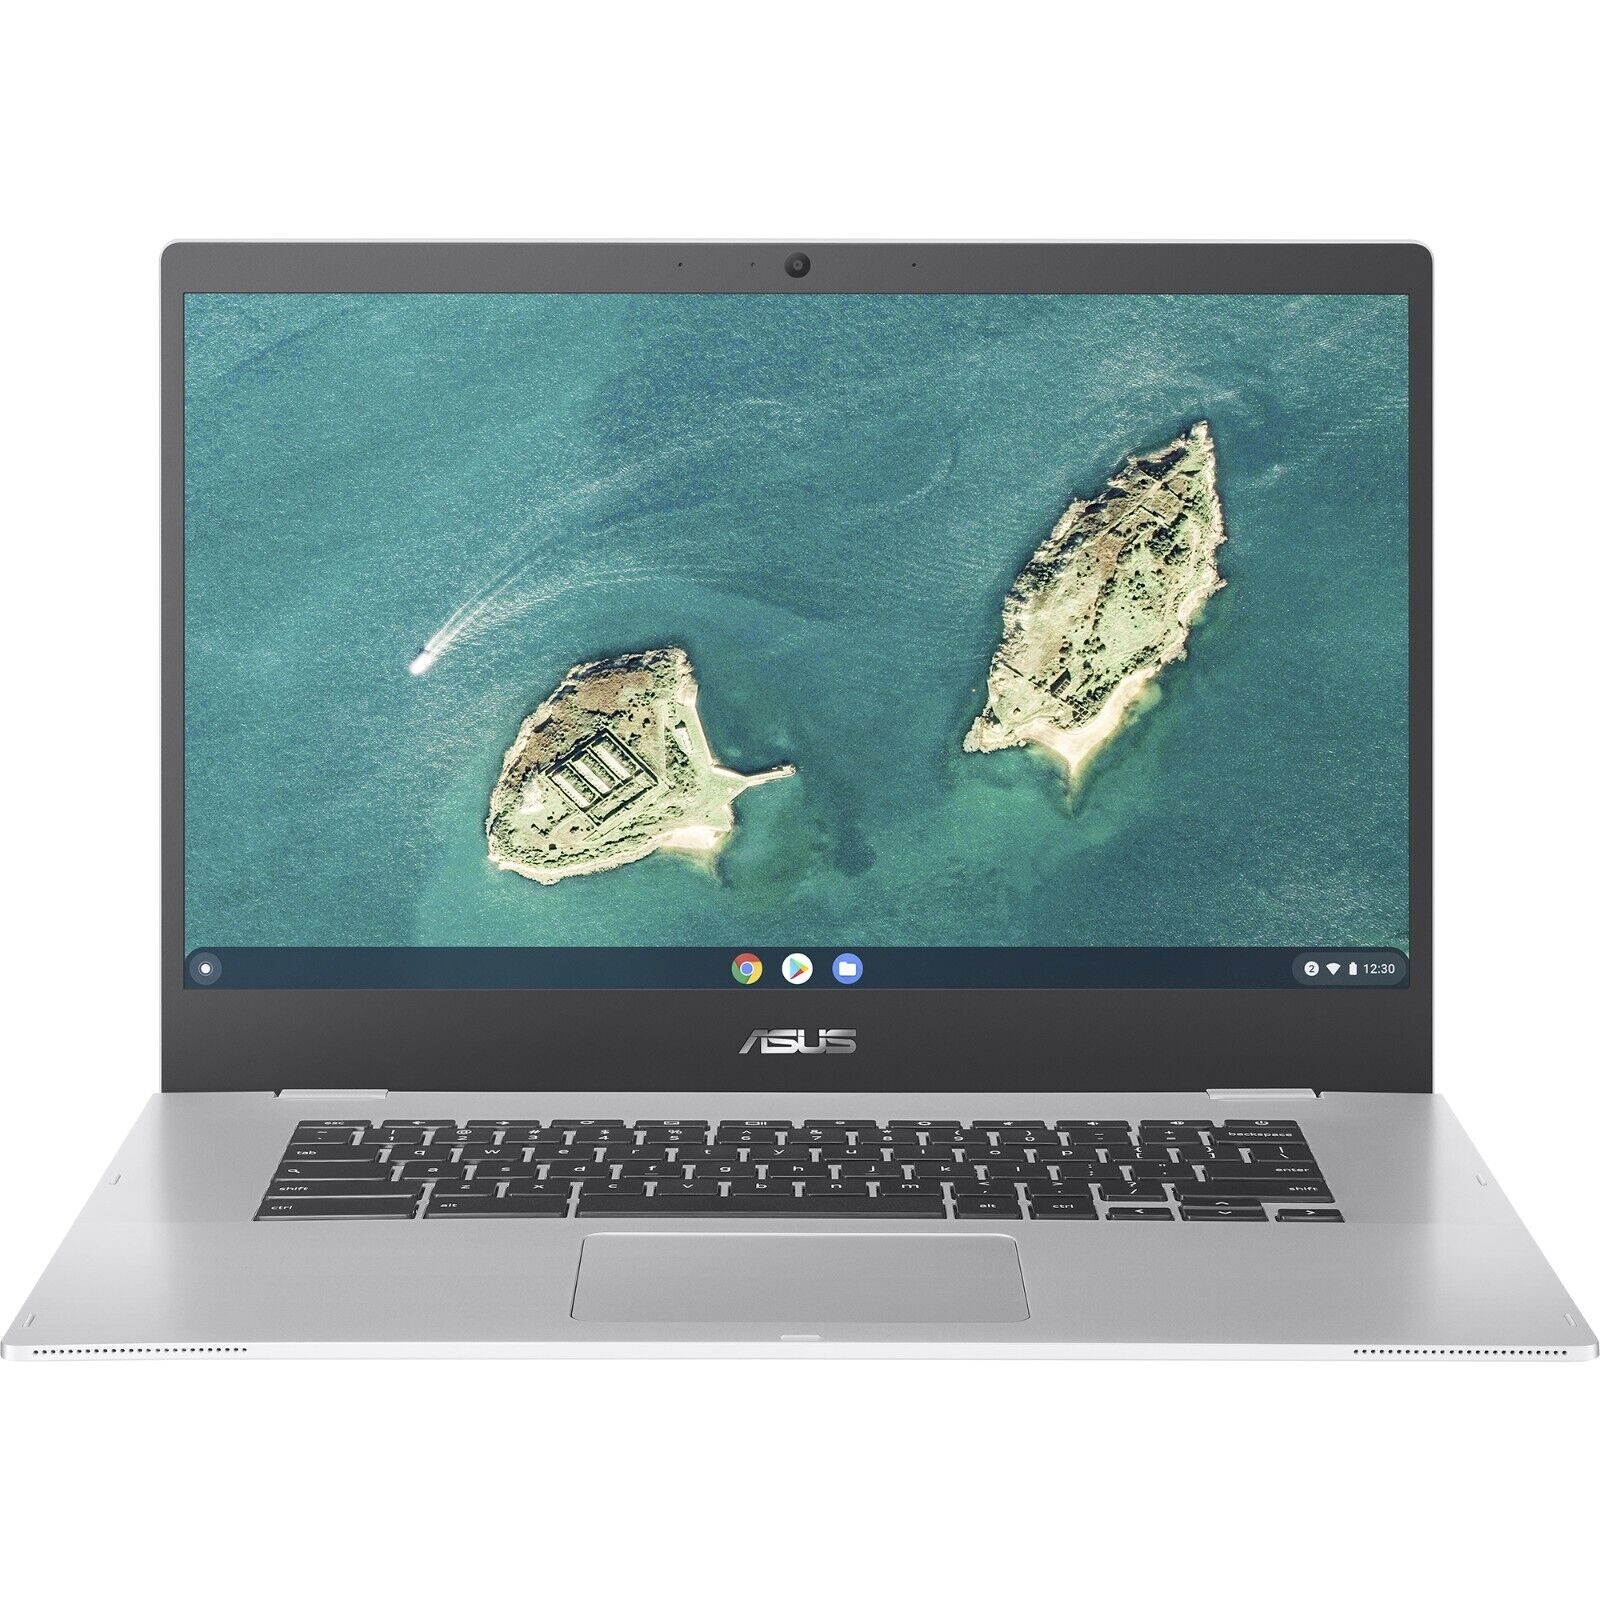 ASUS ChromeBook CX1500CKA 15.6